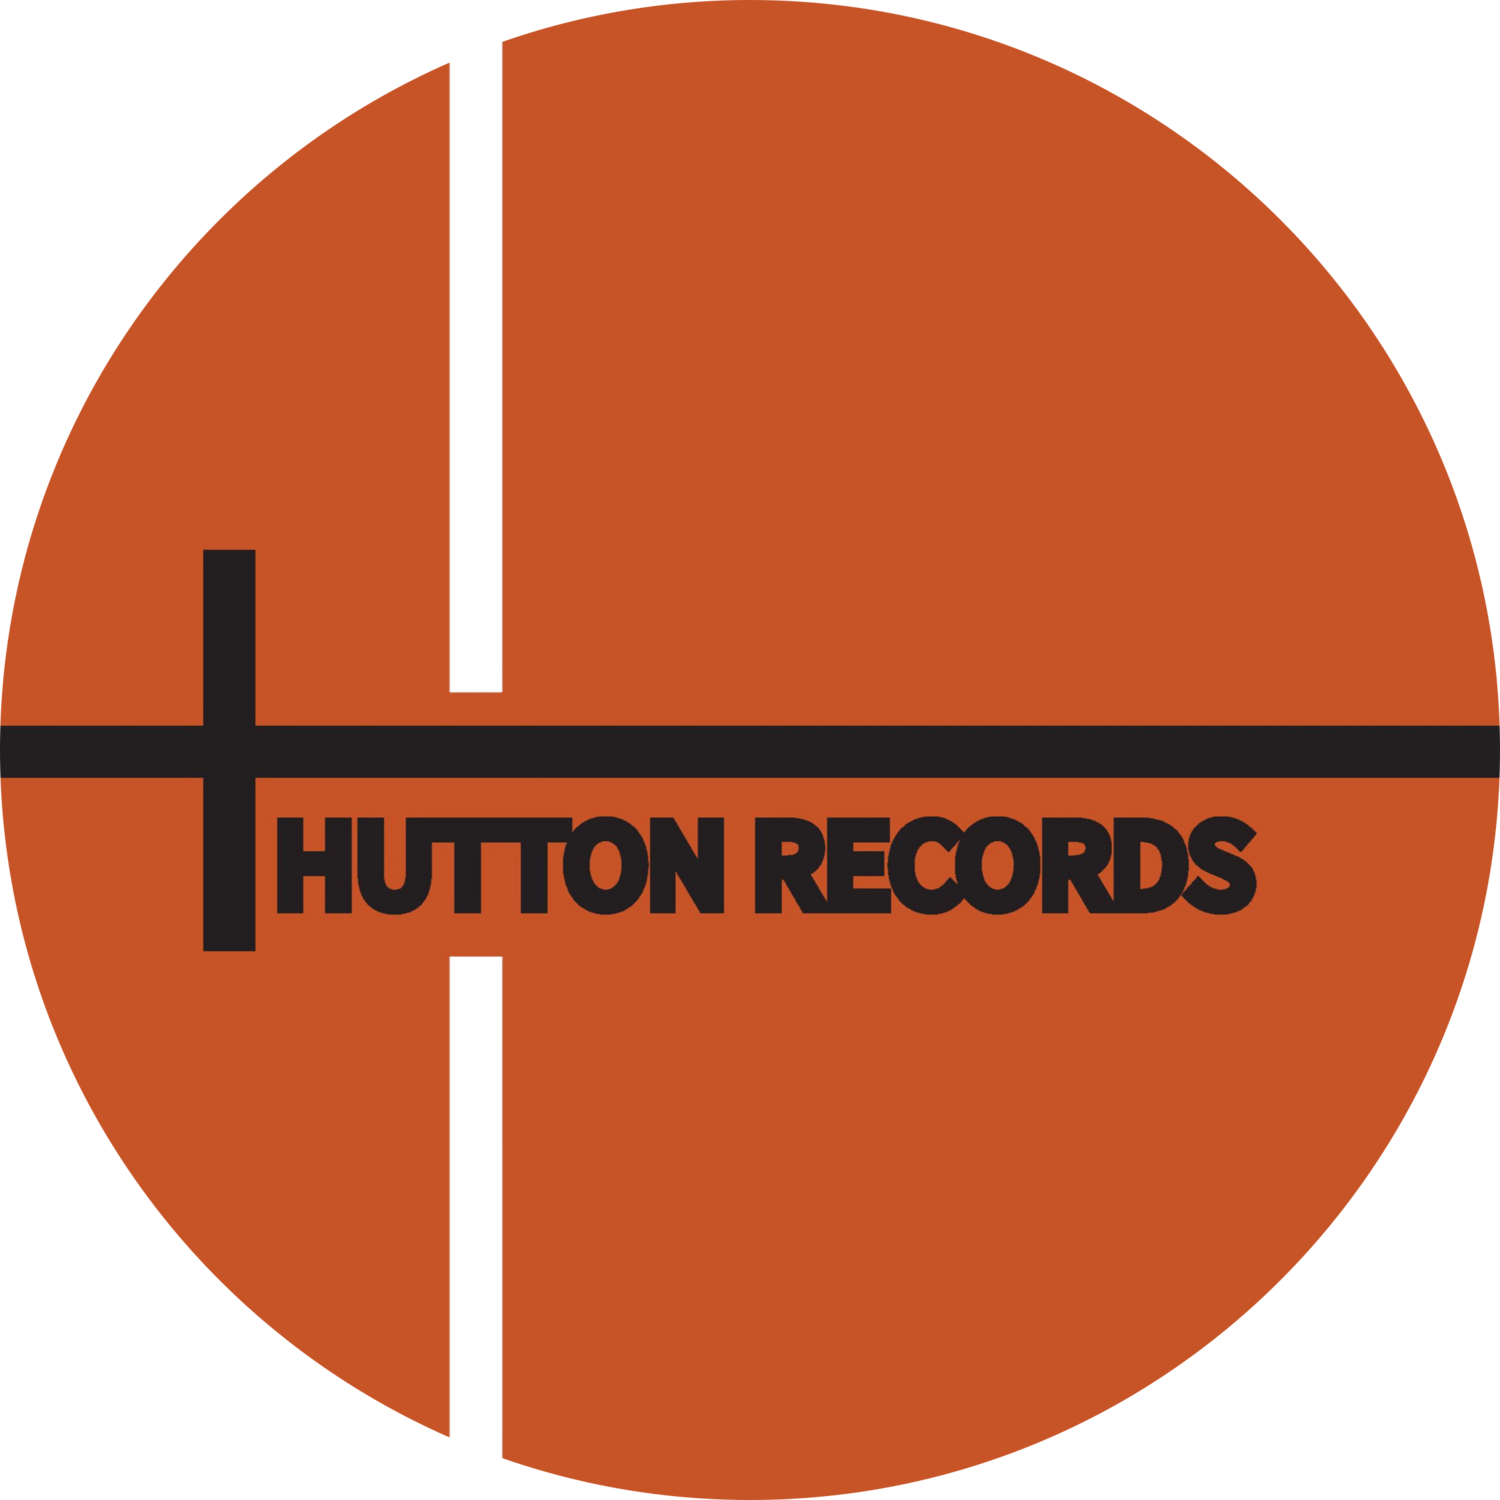 Hutton Records | Nashville-Based Record Label